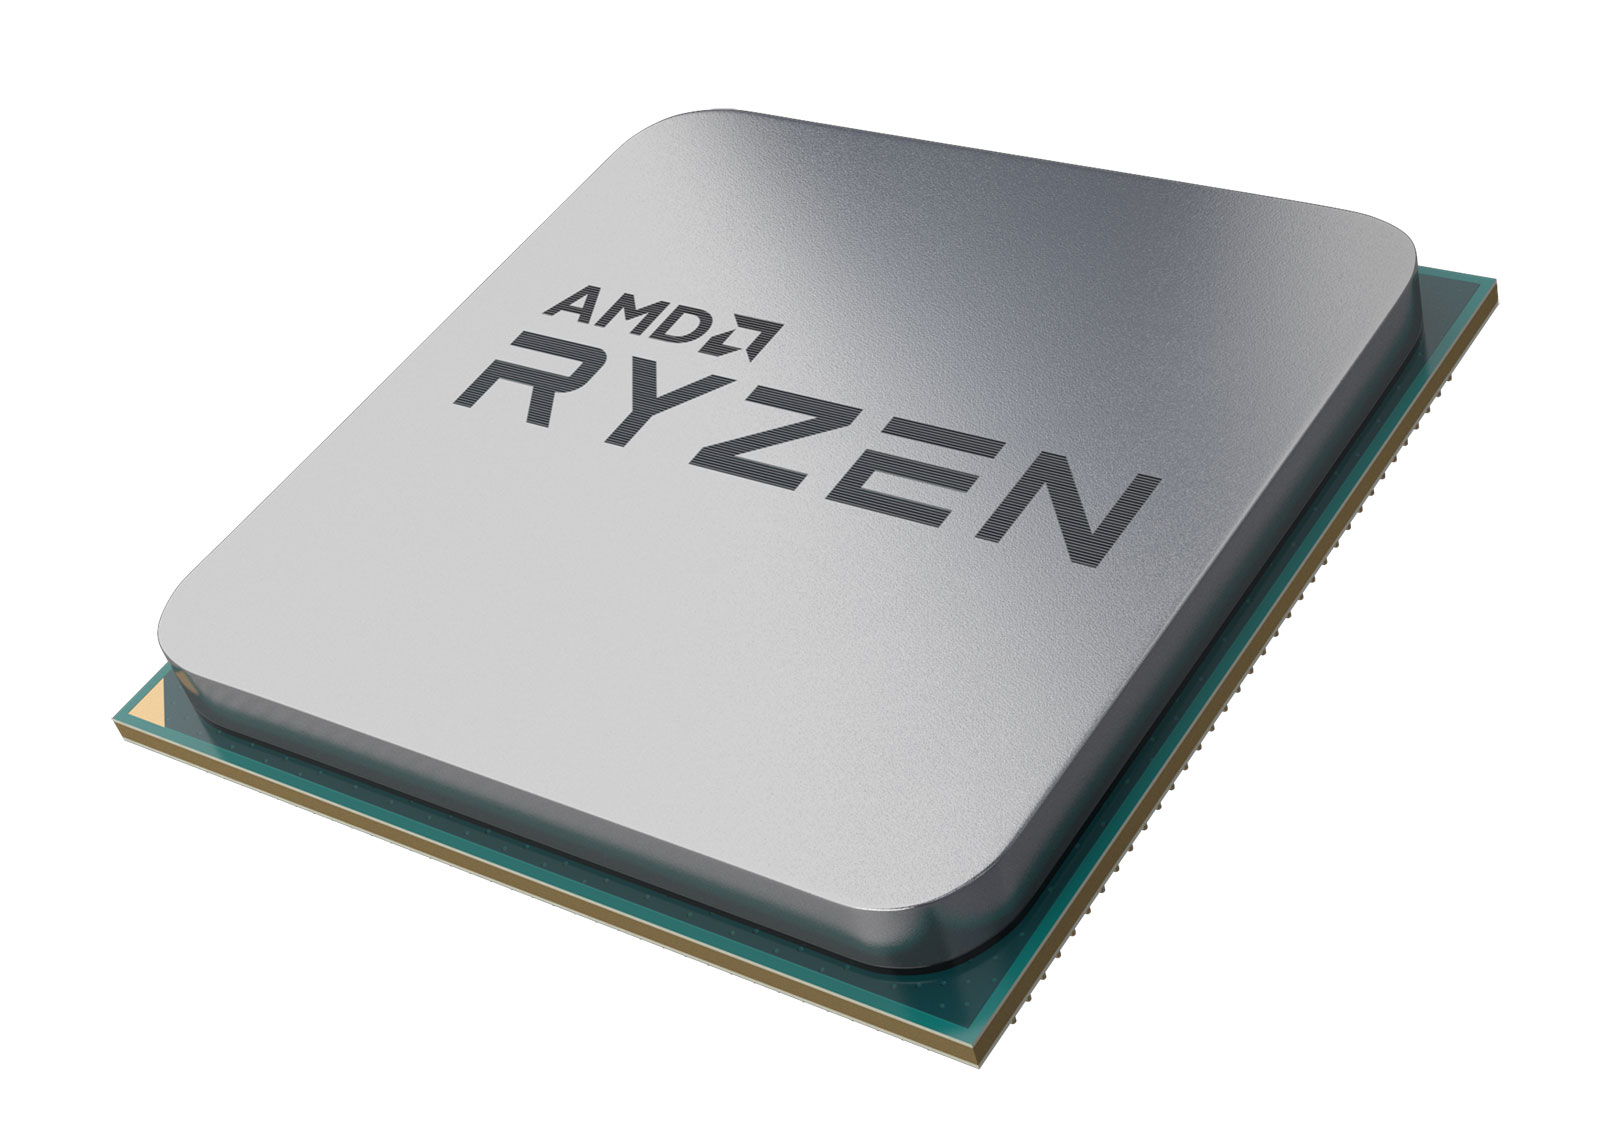 AMD-Ryzen-5-APU